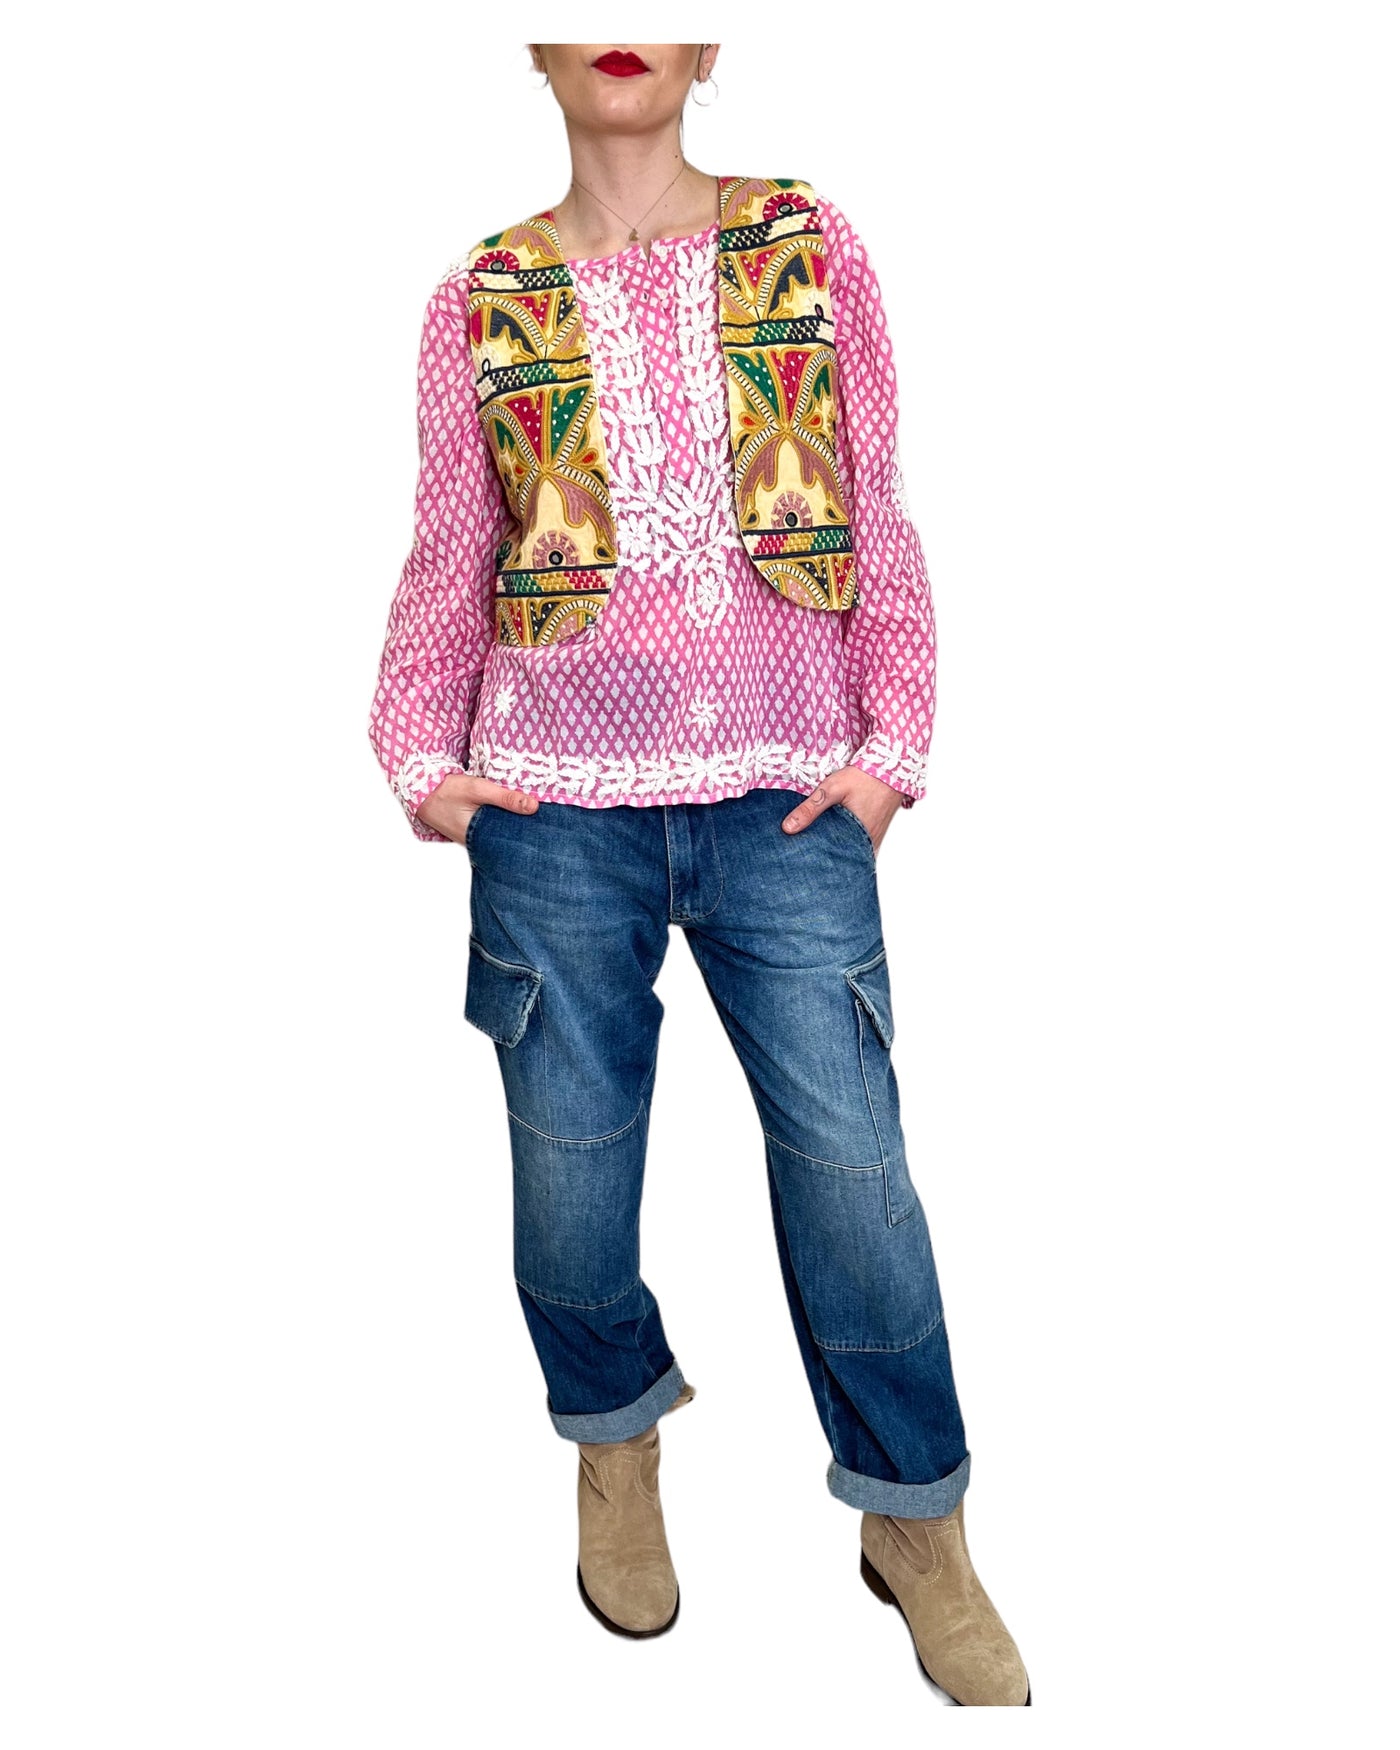 SV Boutique - Camicia Blusa Rita Pink